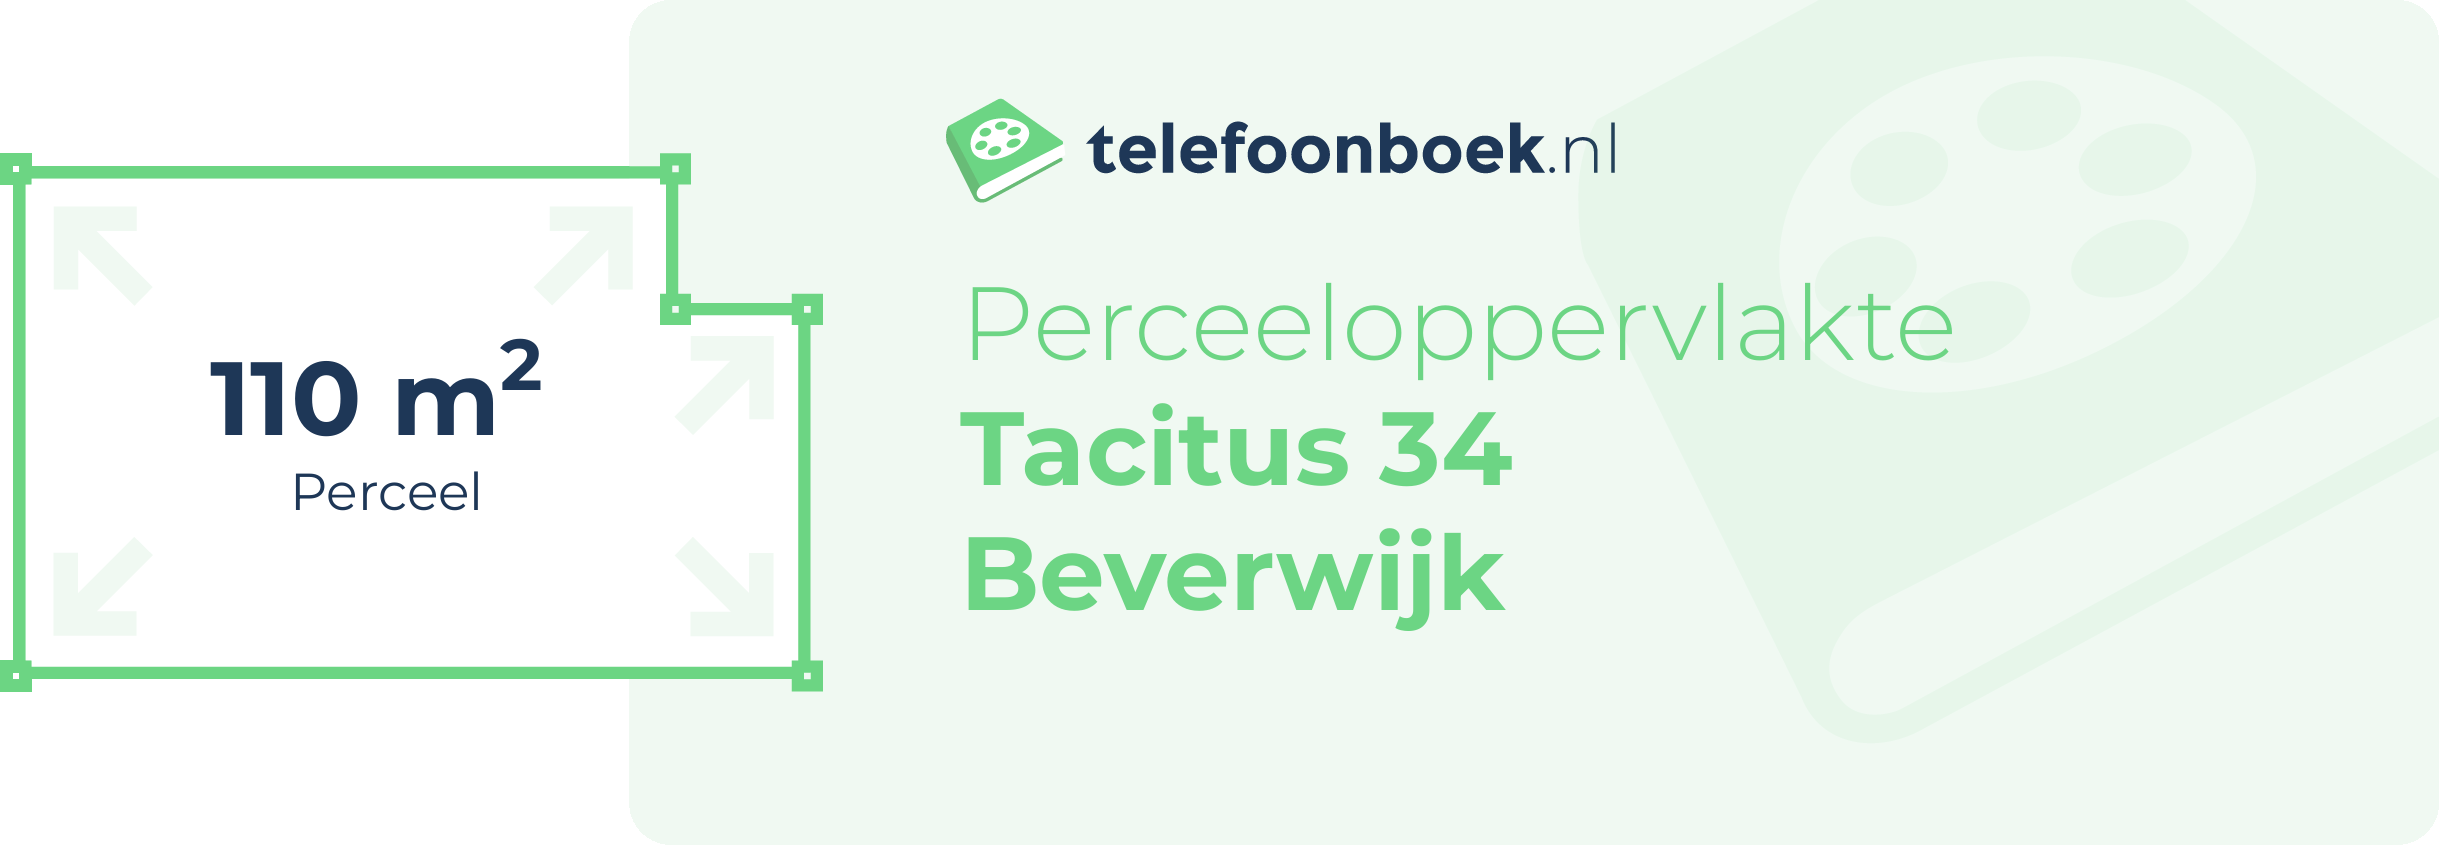 Perceeloppervlakte Tacitus 34 Beverwijk